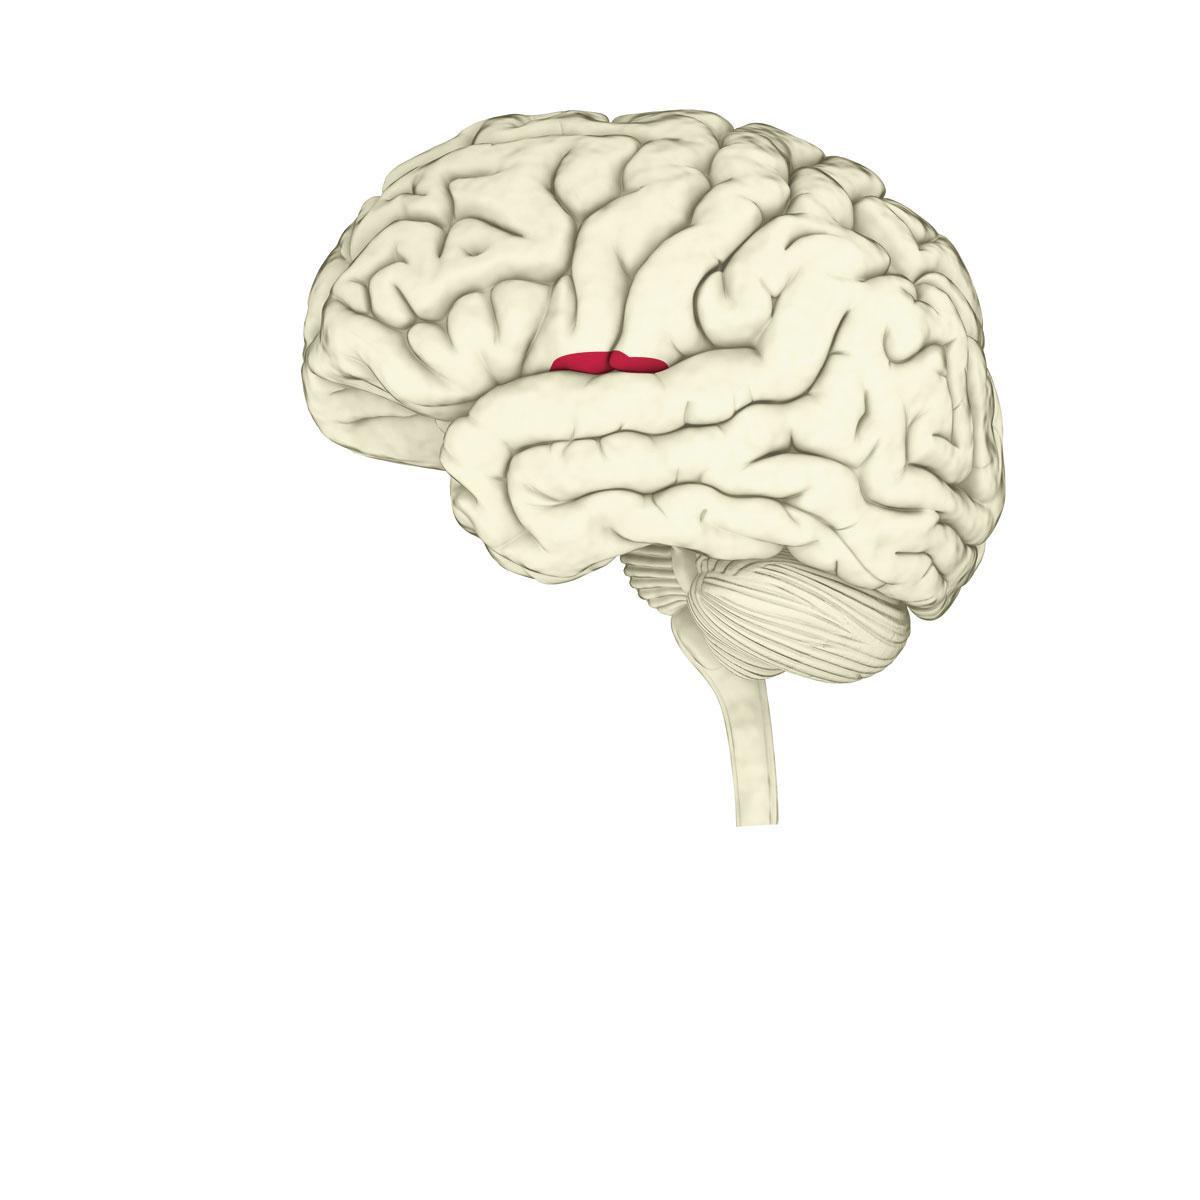 De insula of het eiland van Reil is een breingebied dat prikkels analyseert - van zintuiglijke prikkels tot prikkels die je inwendige organen naar je brein sturen. Daarnaast verwerkt de insula ook emoties.